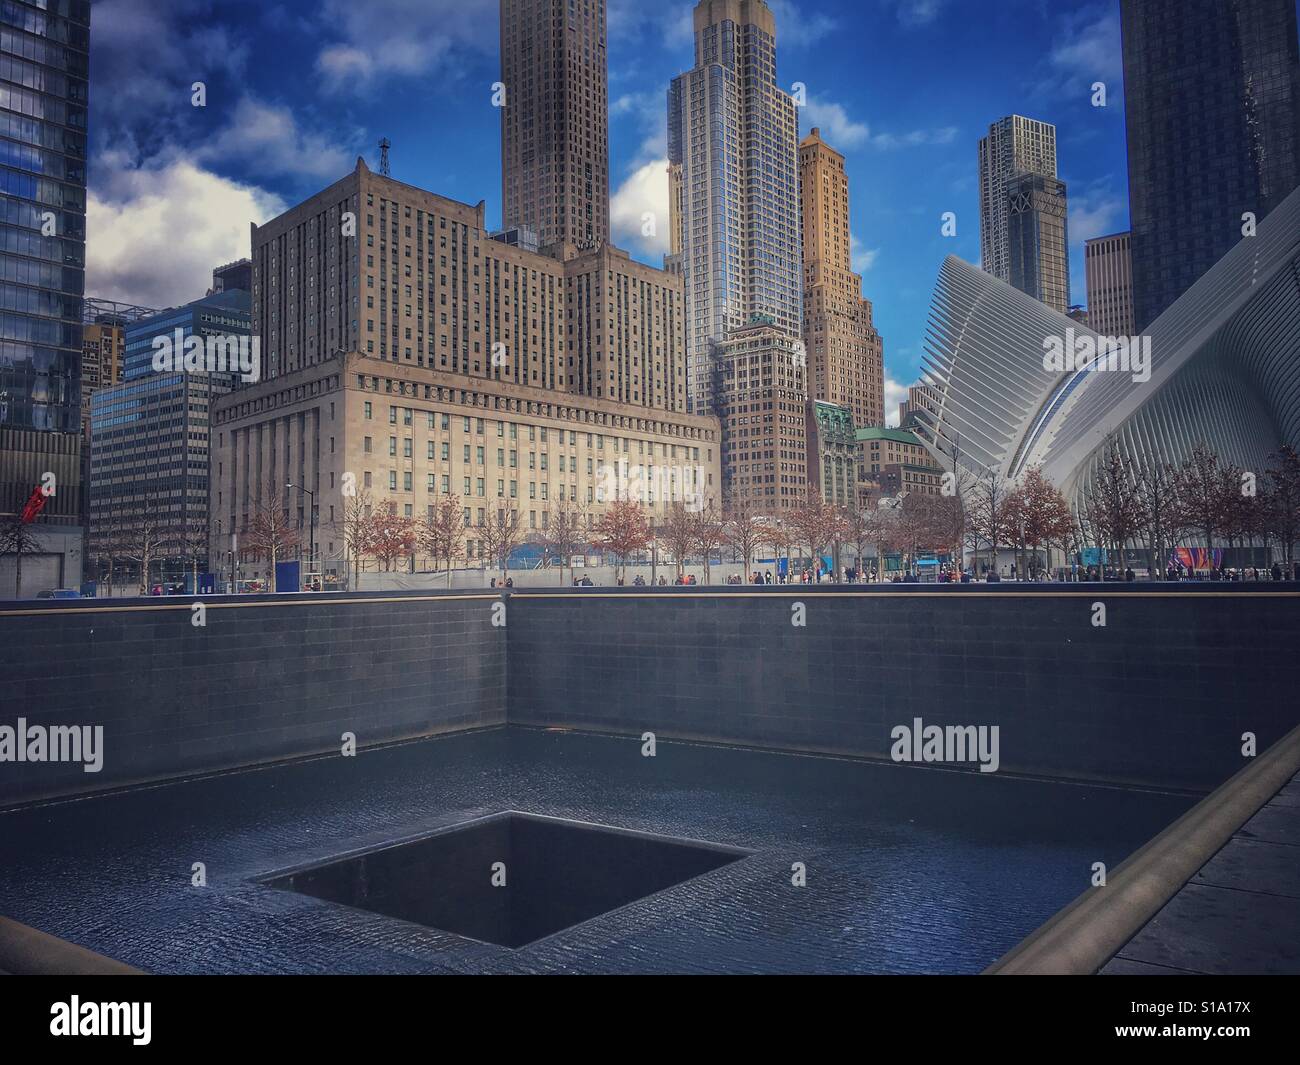 Attacchi terroristici lasciato un buco senza fondo in New York. World Trade Center monumento, 9/11 Memorial & Museum, un omaggio al passato e un luogo di speranza per il futuro. Foto Stock